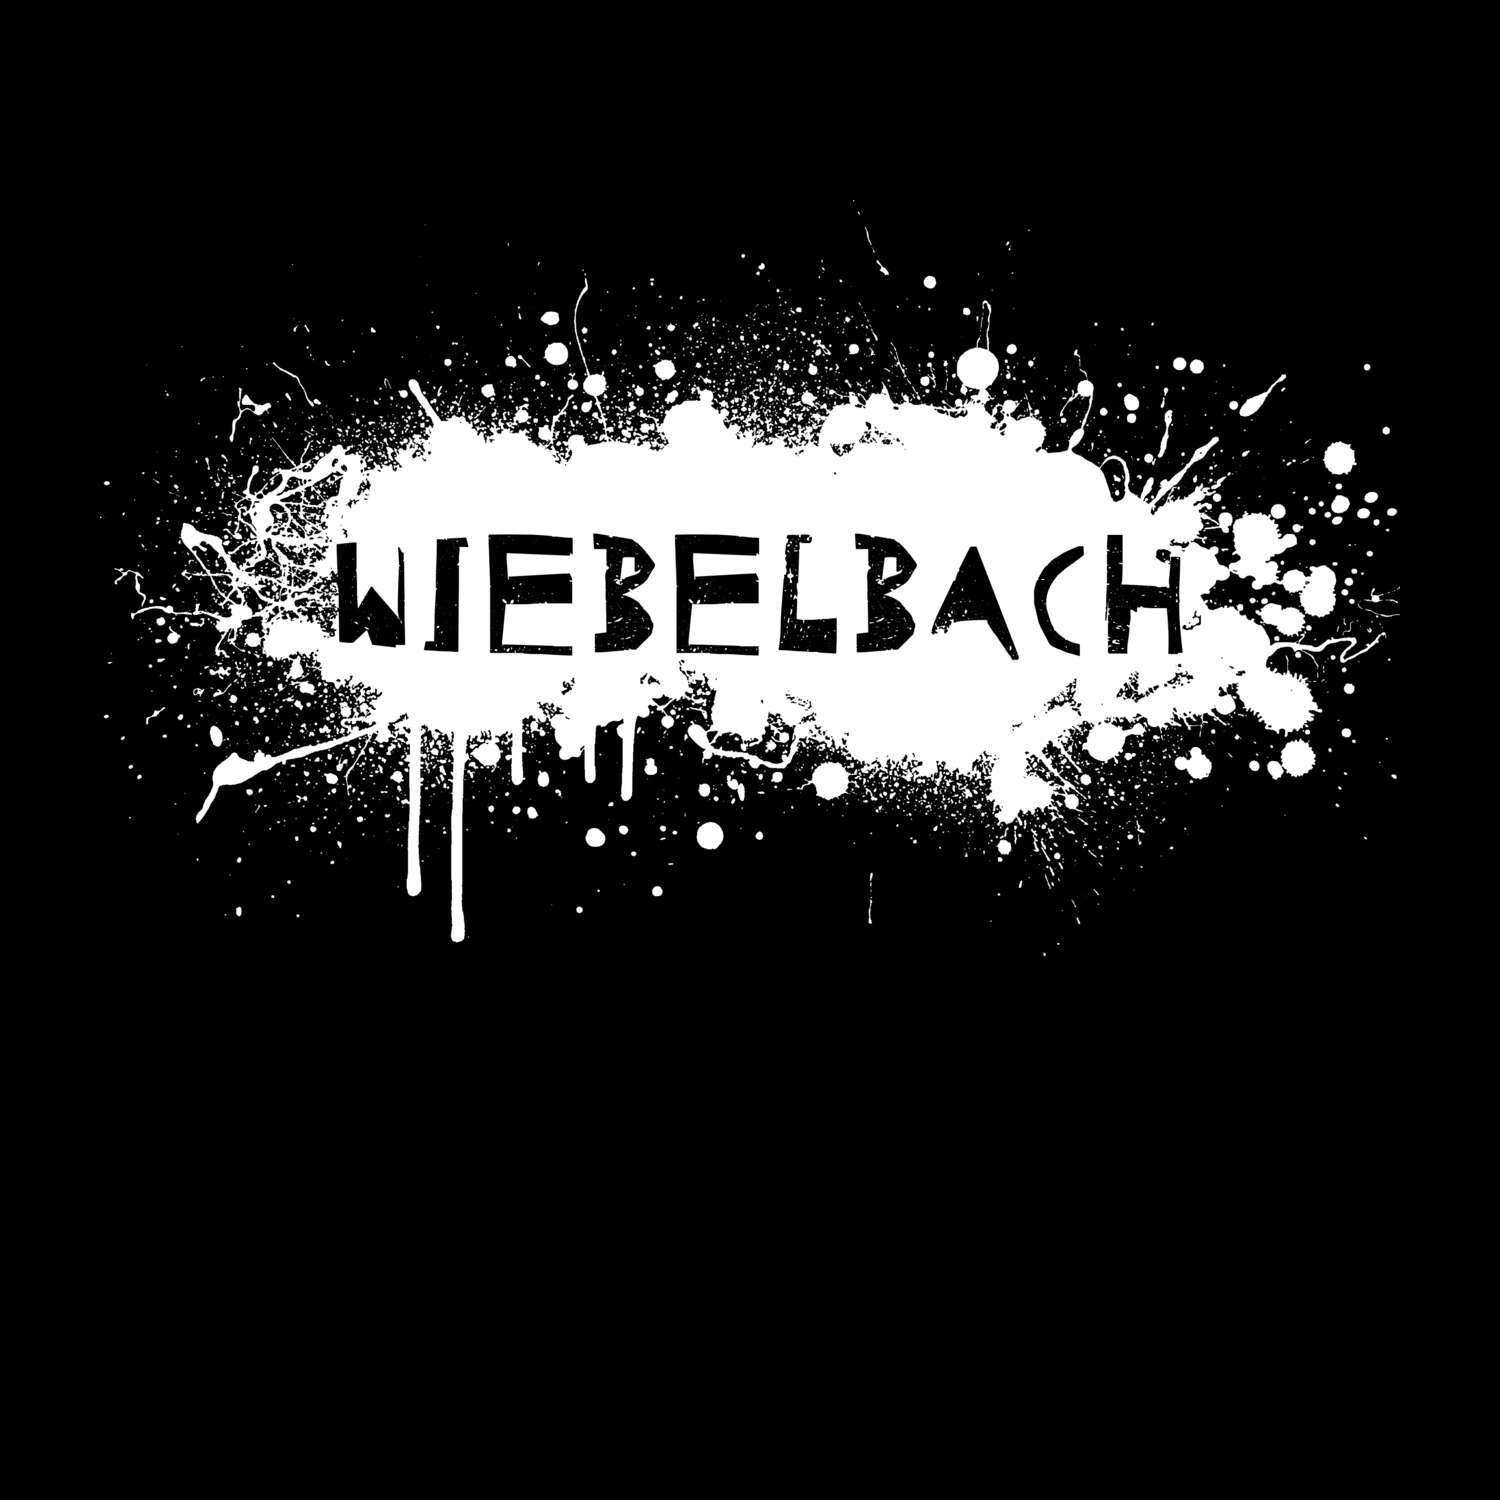 Wiebelbach T-Shirt »Paint Splash Punk«